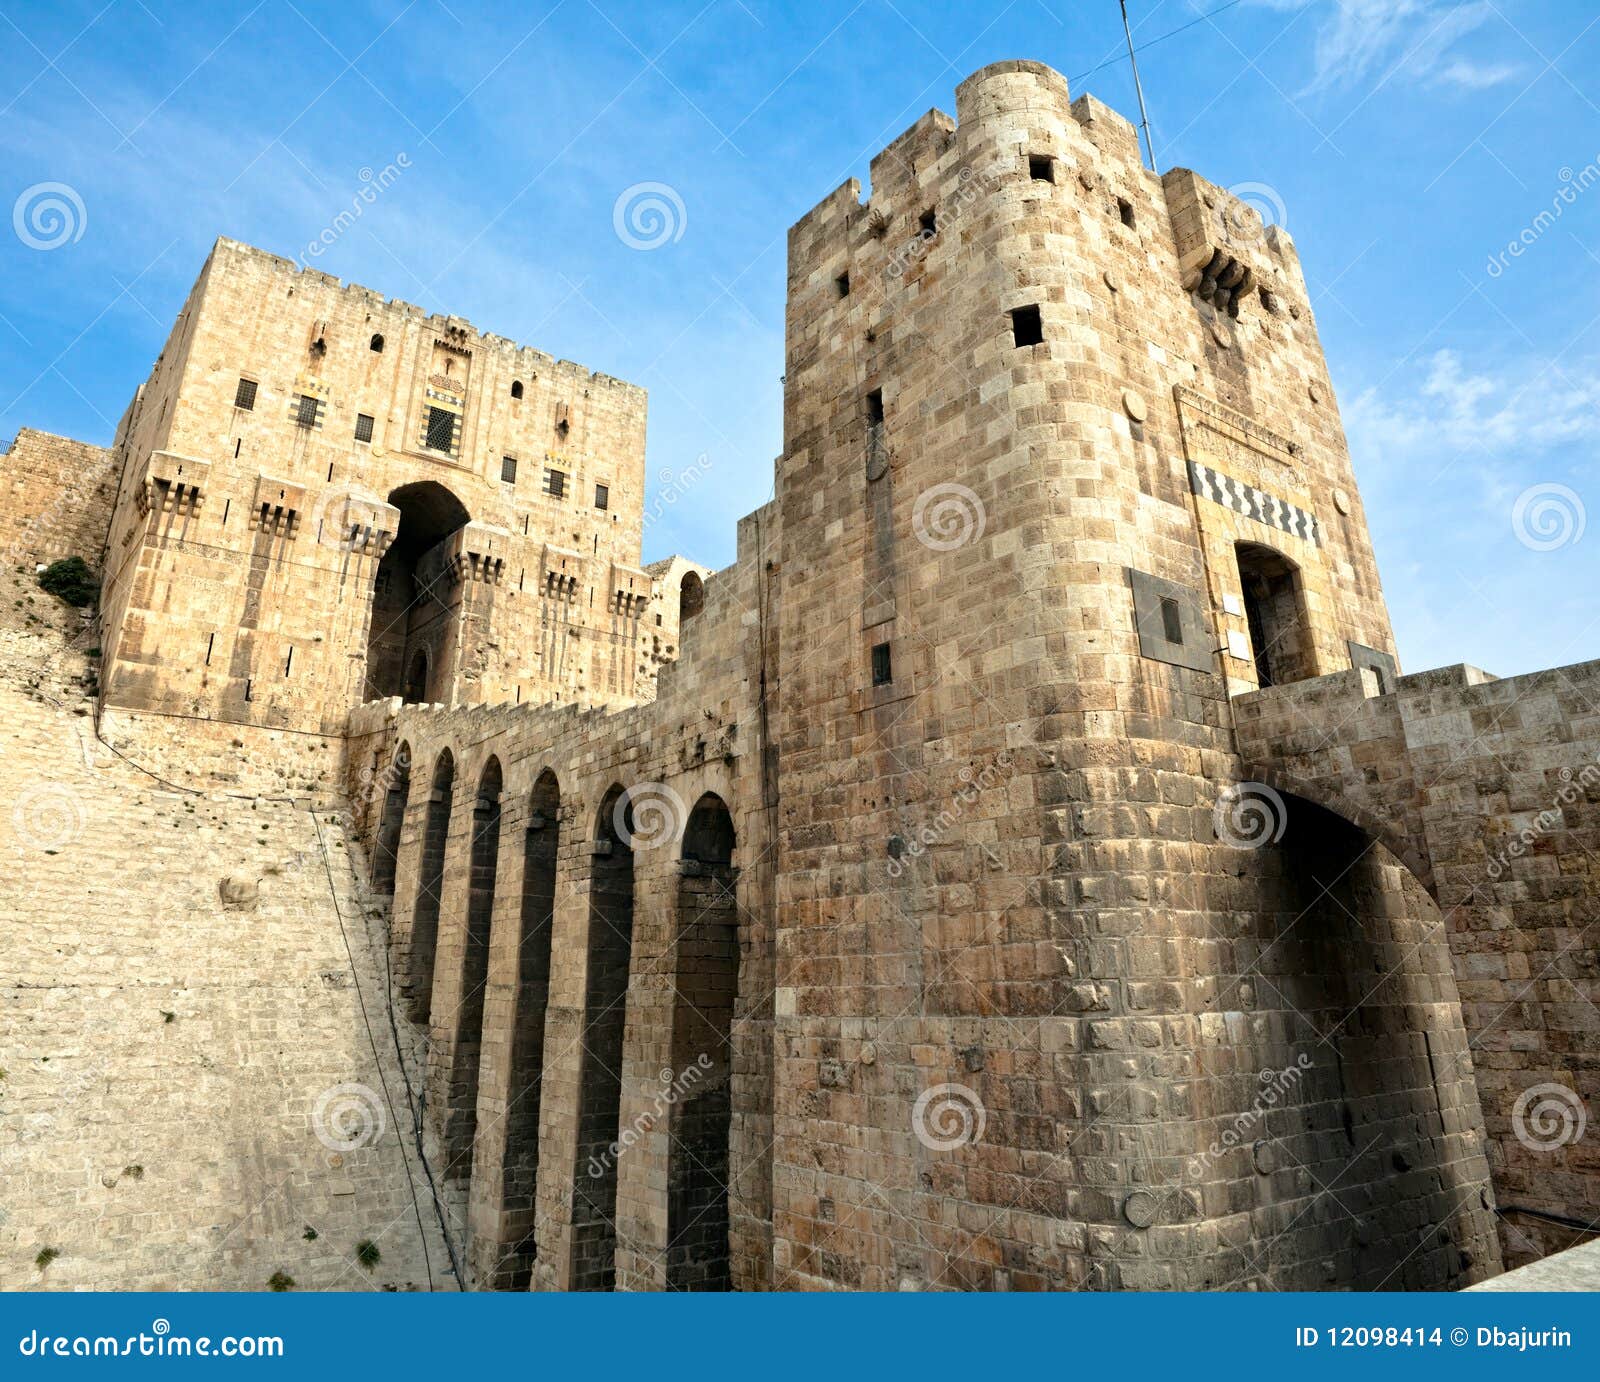 Syria - Aleppo. Famous fortress and citadel in Aleppo, Syria. Entrance bridge.